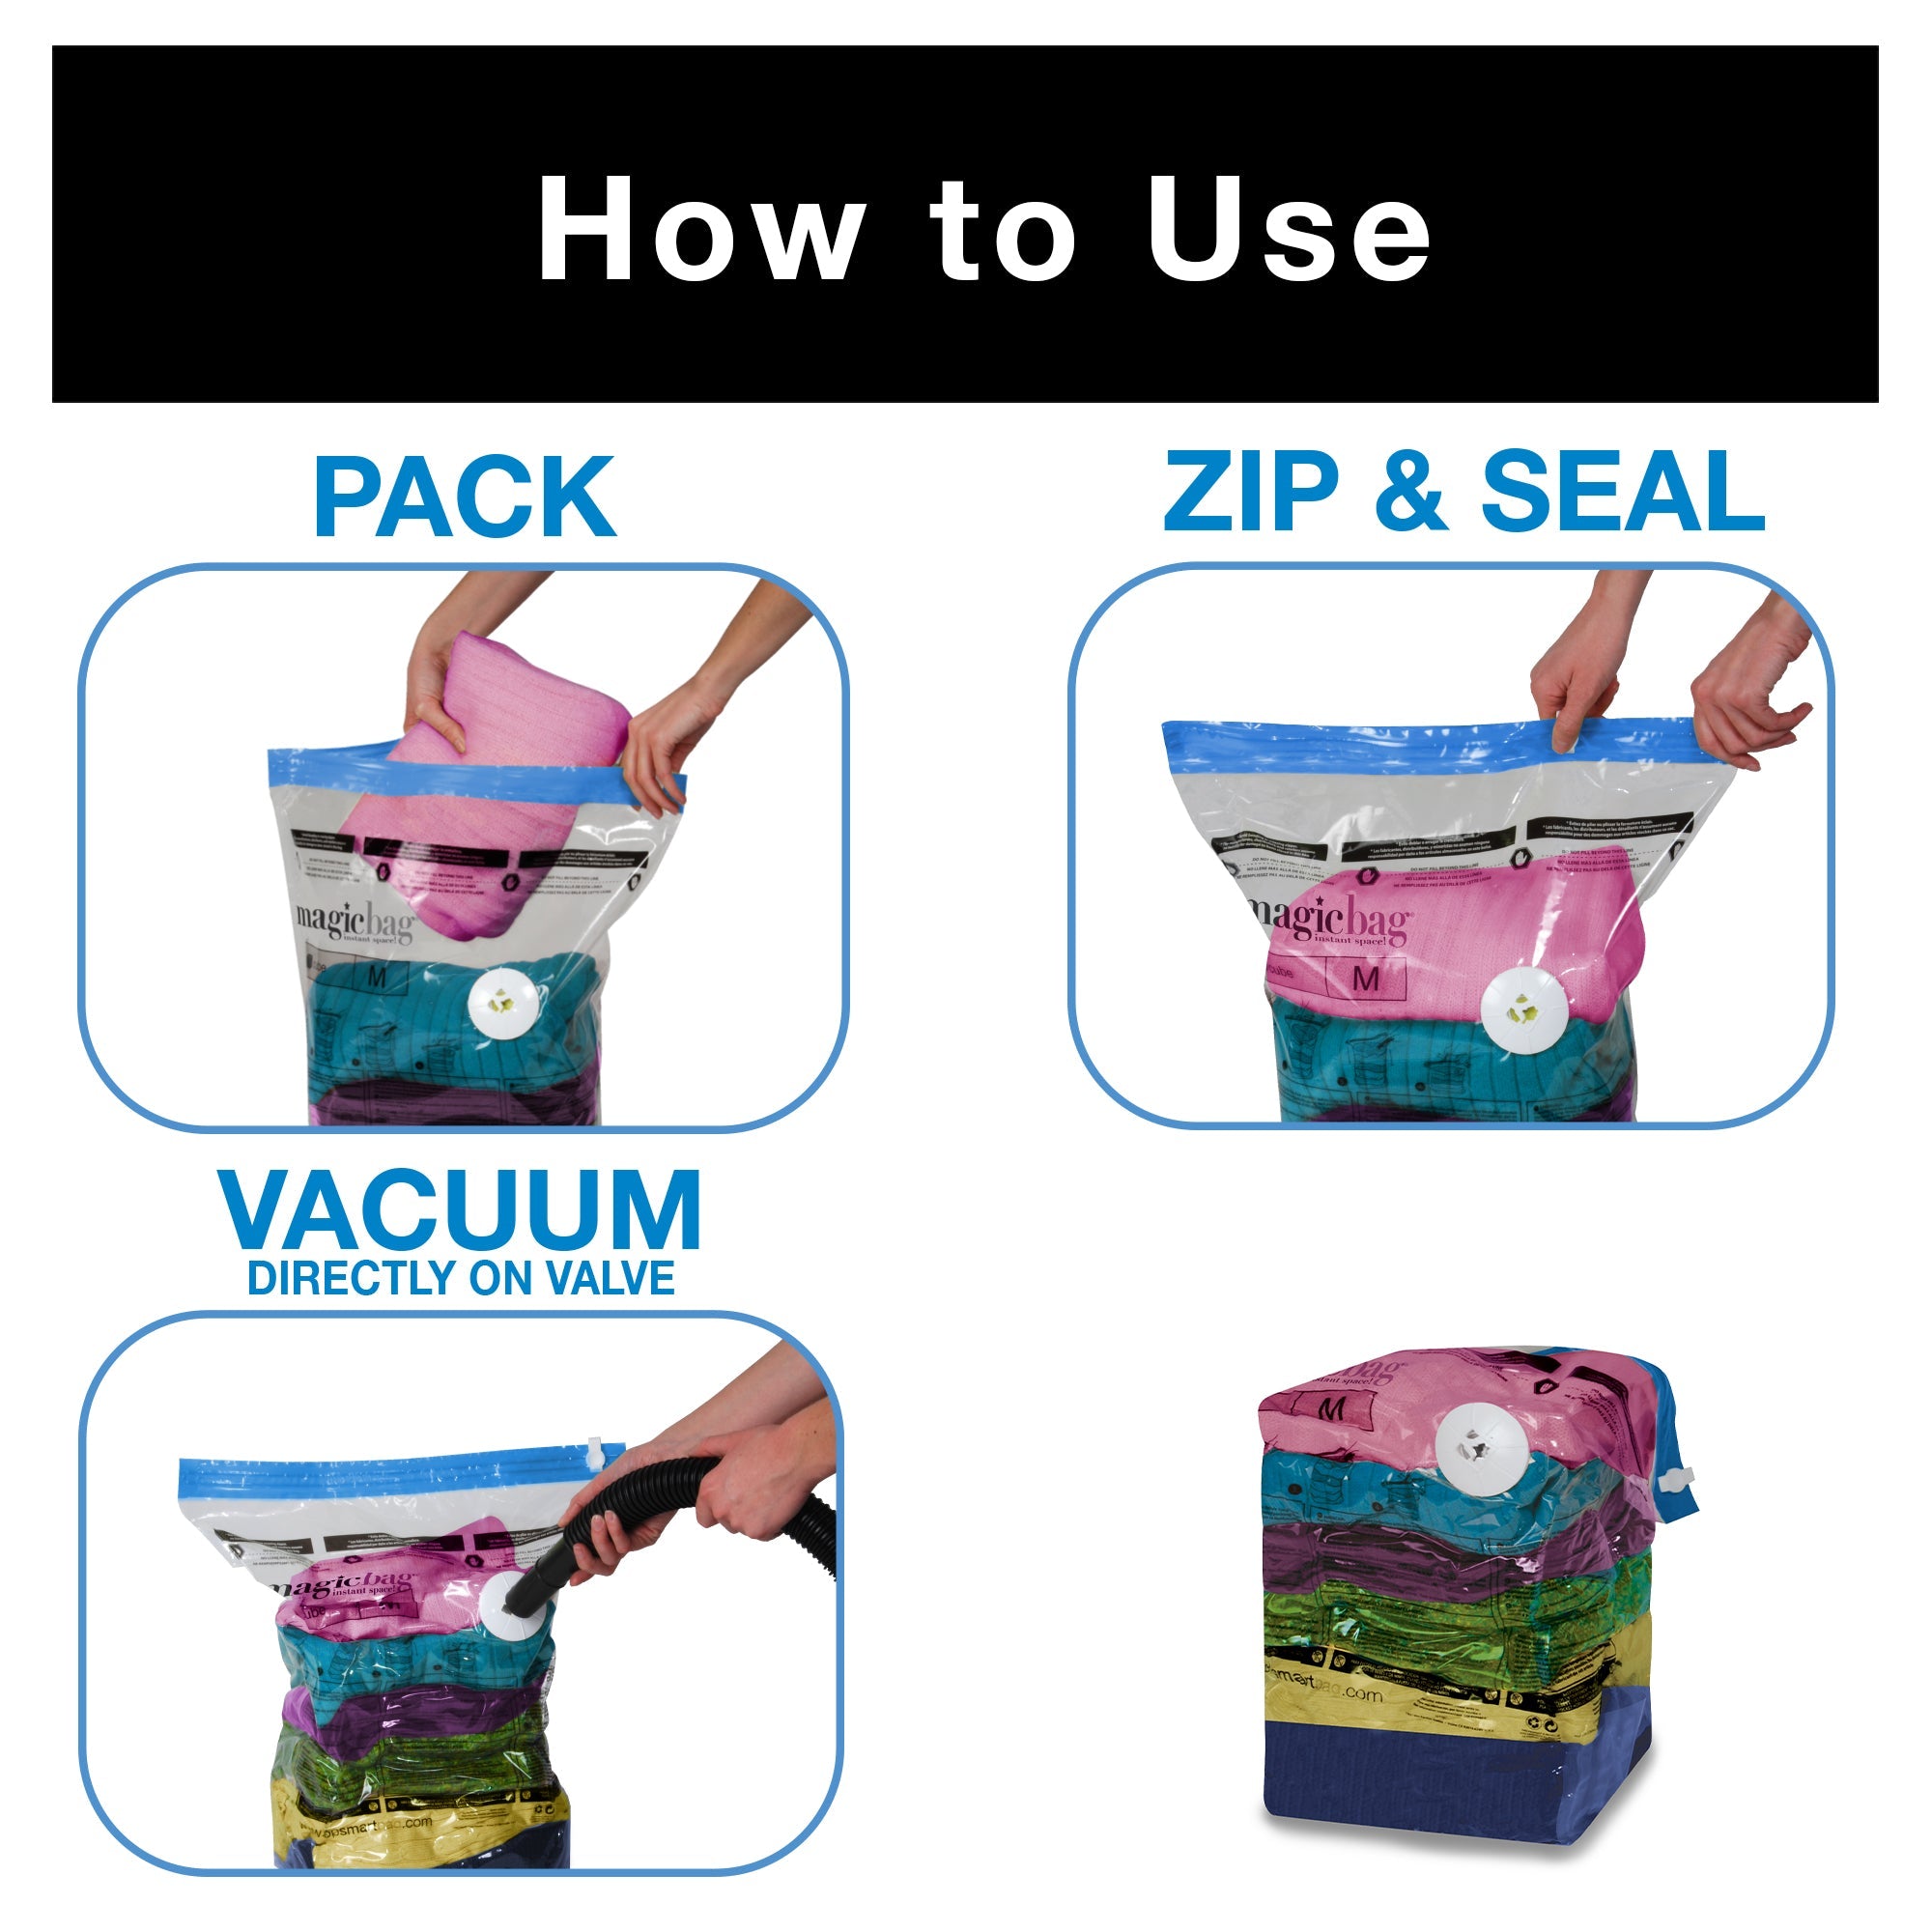 Cube Design Vacuum Storage Bag Vacuum Sealed Storage Bags for